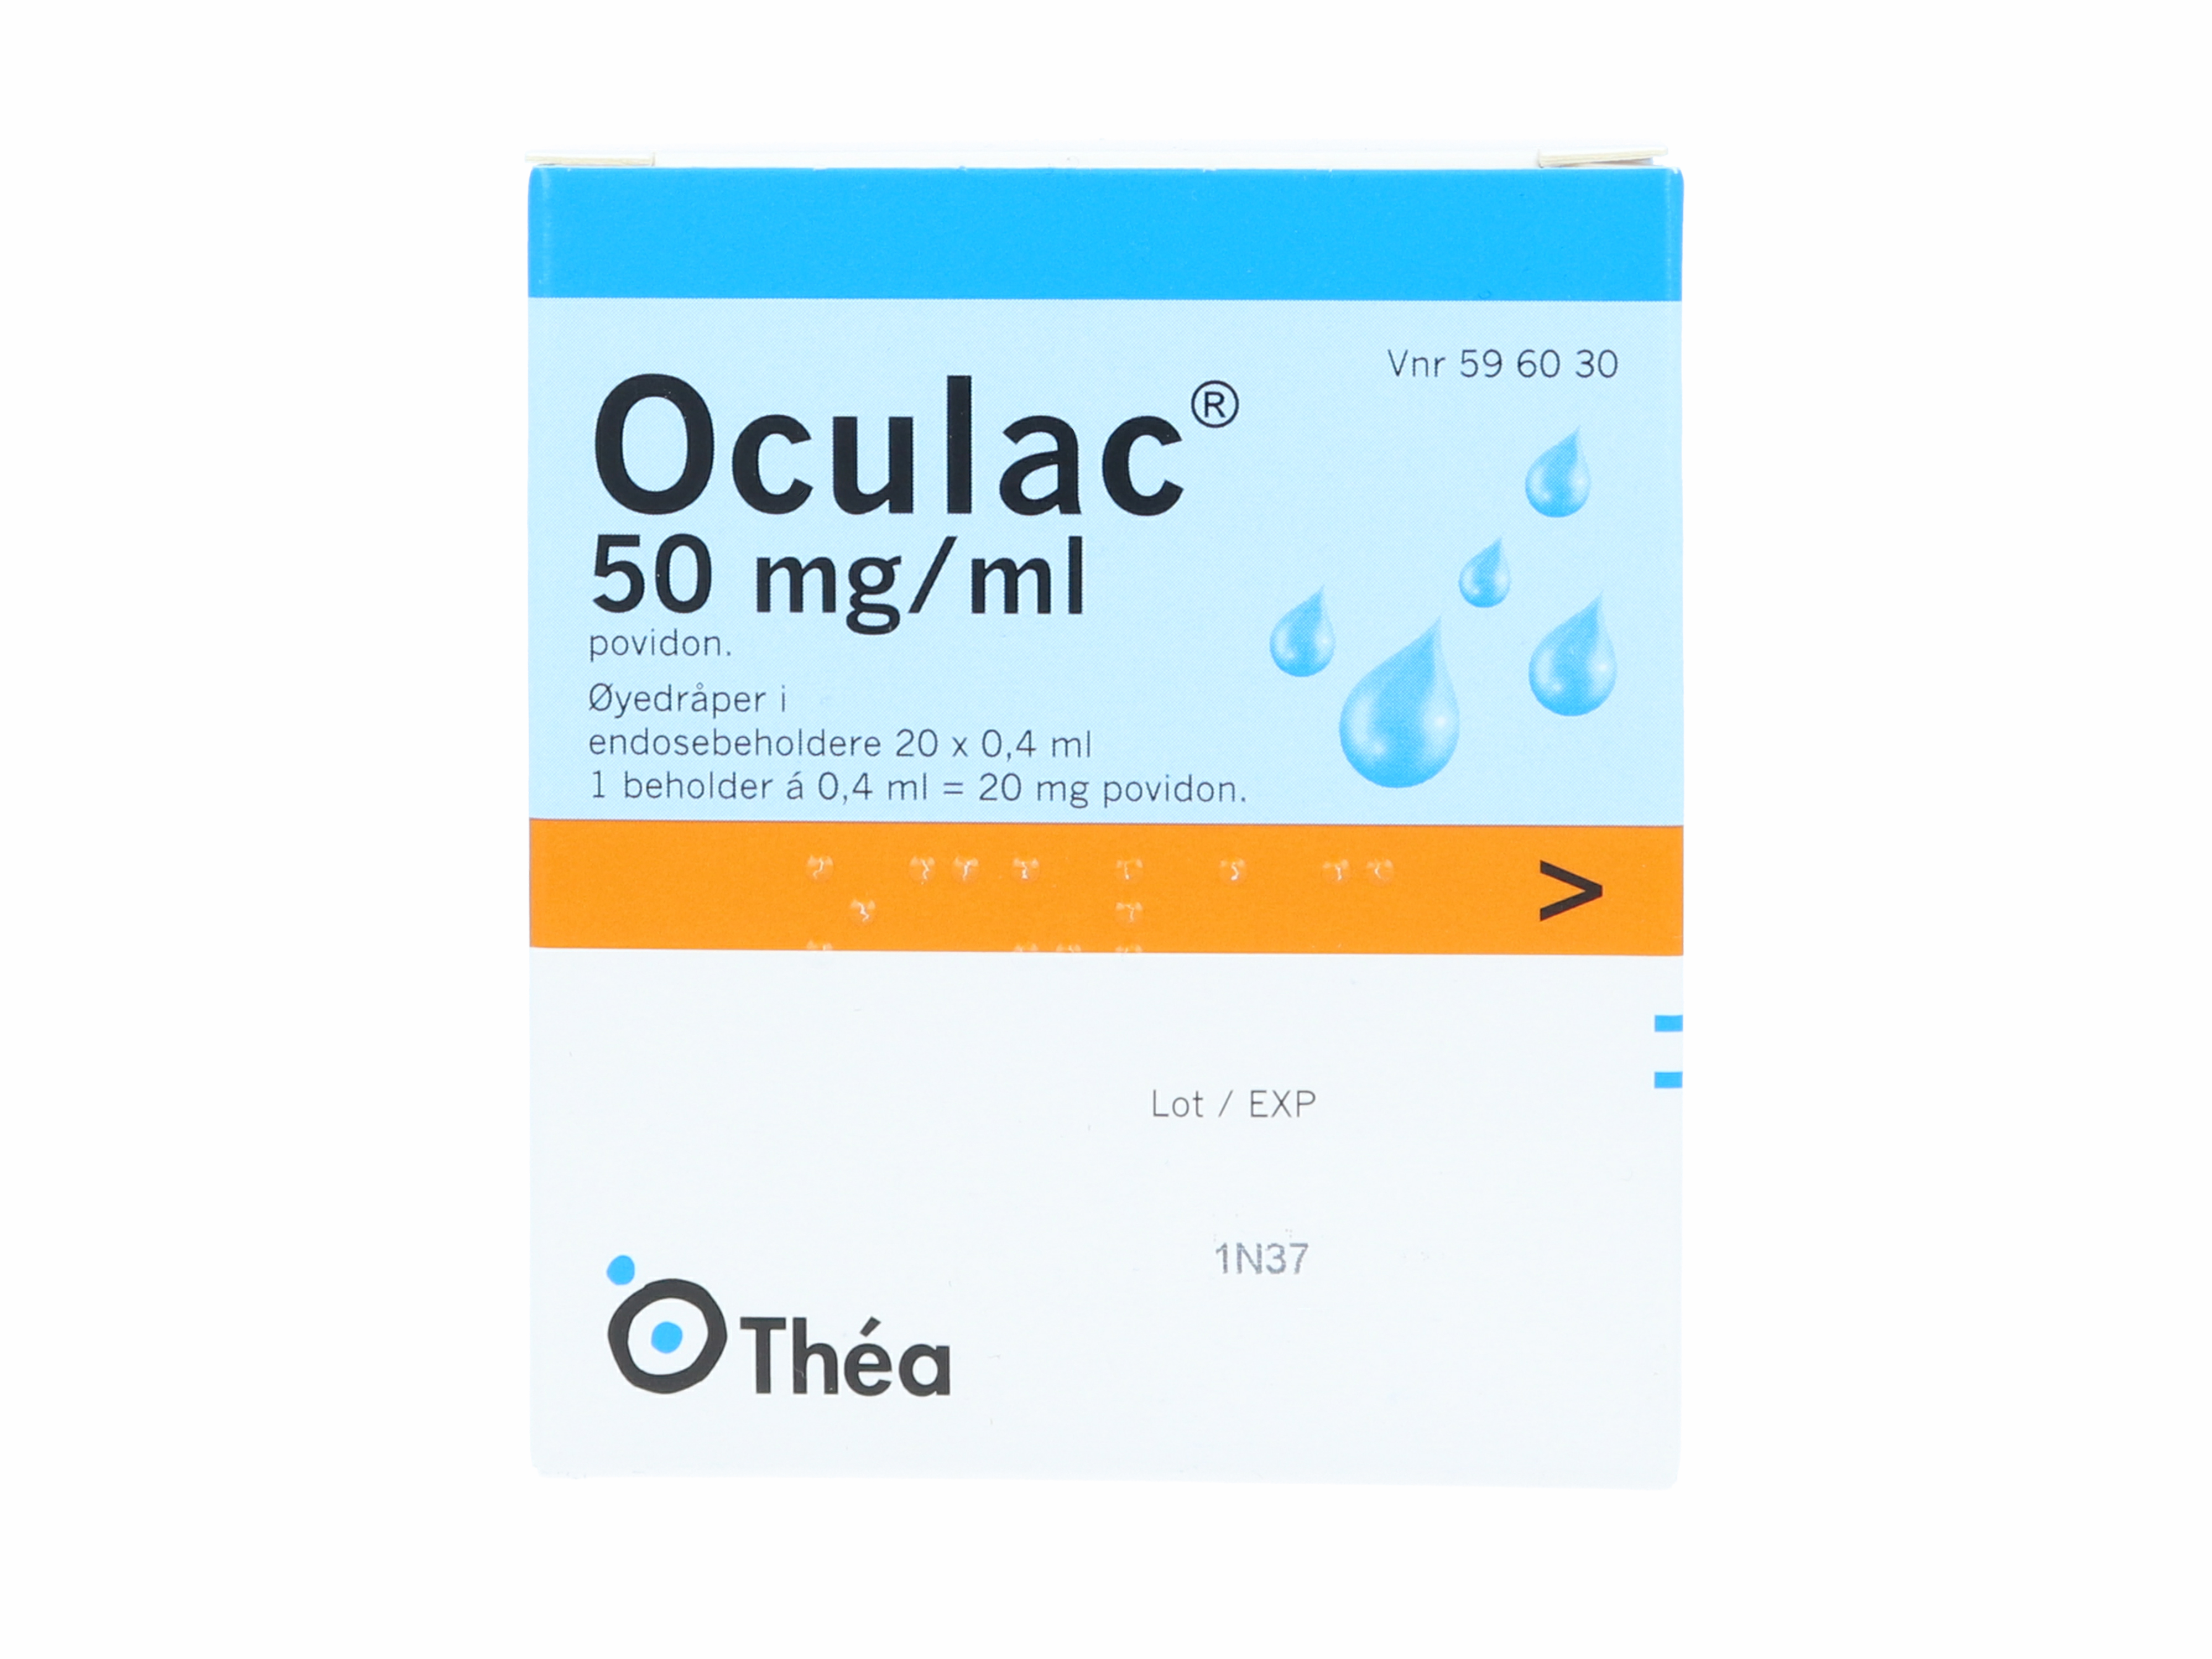 Oculac 50mg/ml øyedråper i endosebeholdere, 20 x 0,4 ml